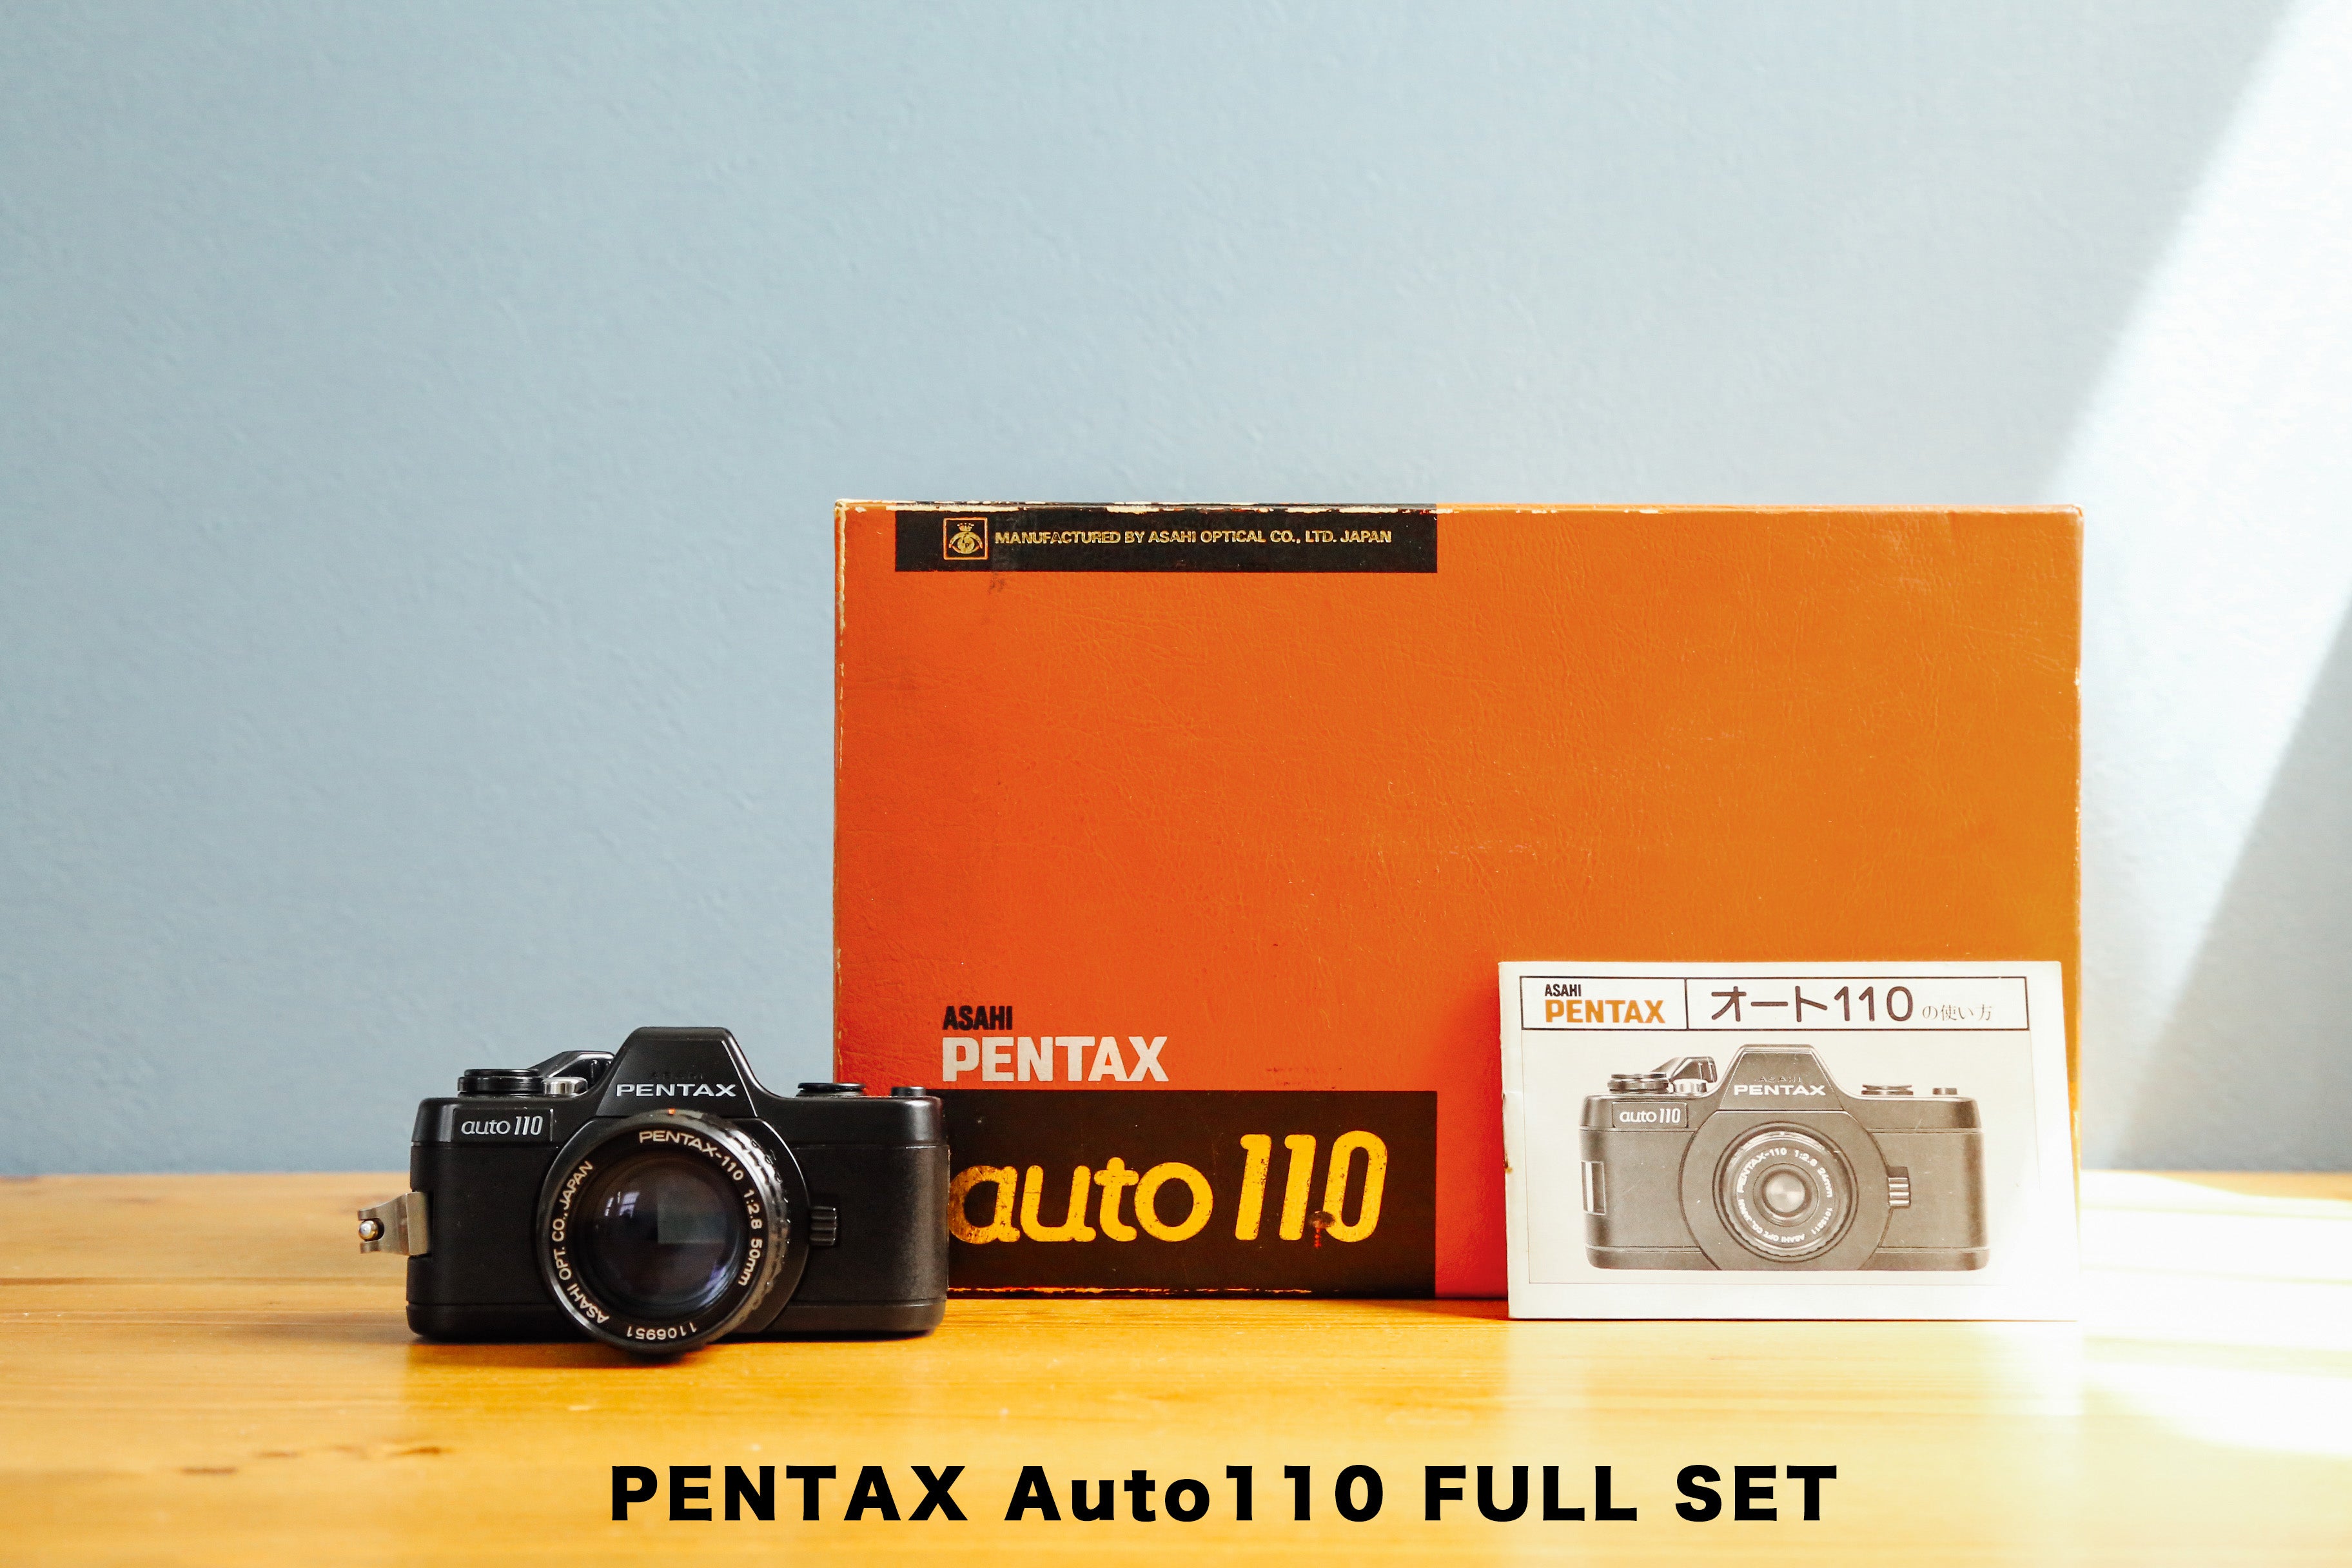 Pentax Auto 110 ダブルレンズ・ストロボセット24mm f28